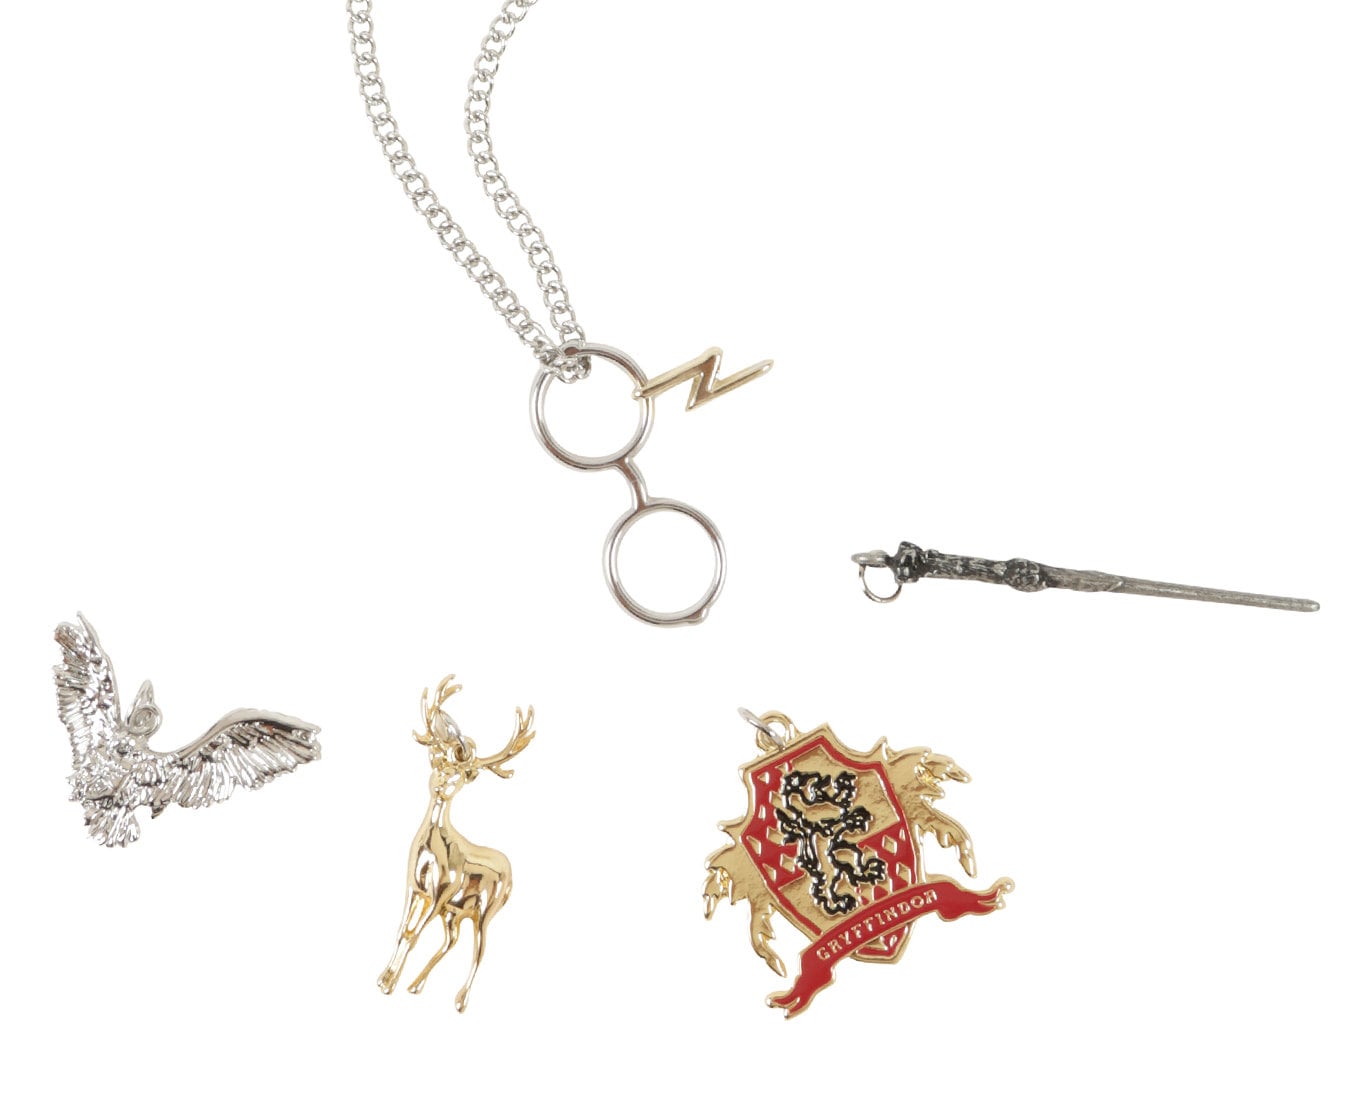 Harry Potter Books Themed Multicharm Metal Charm Bracelet